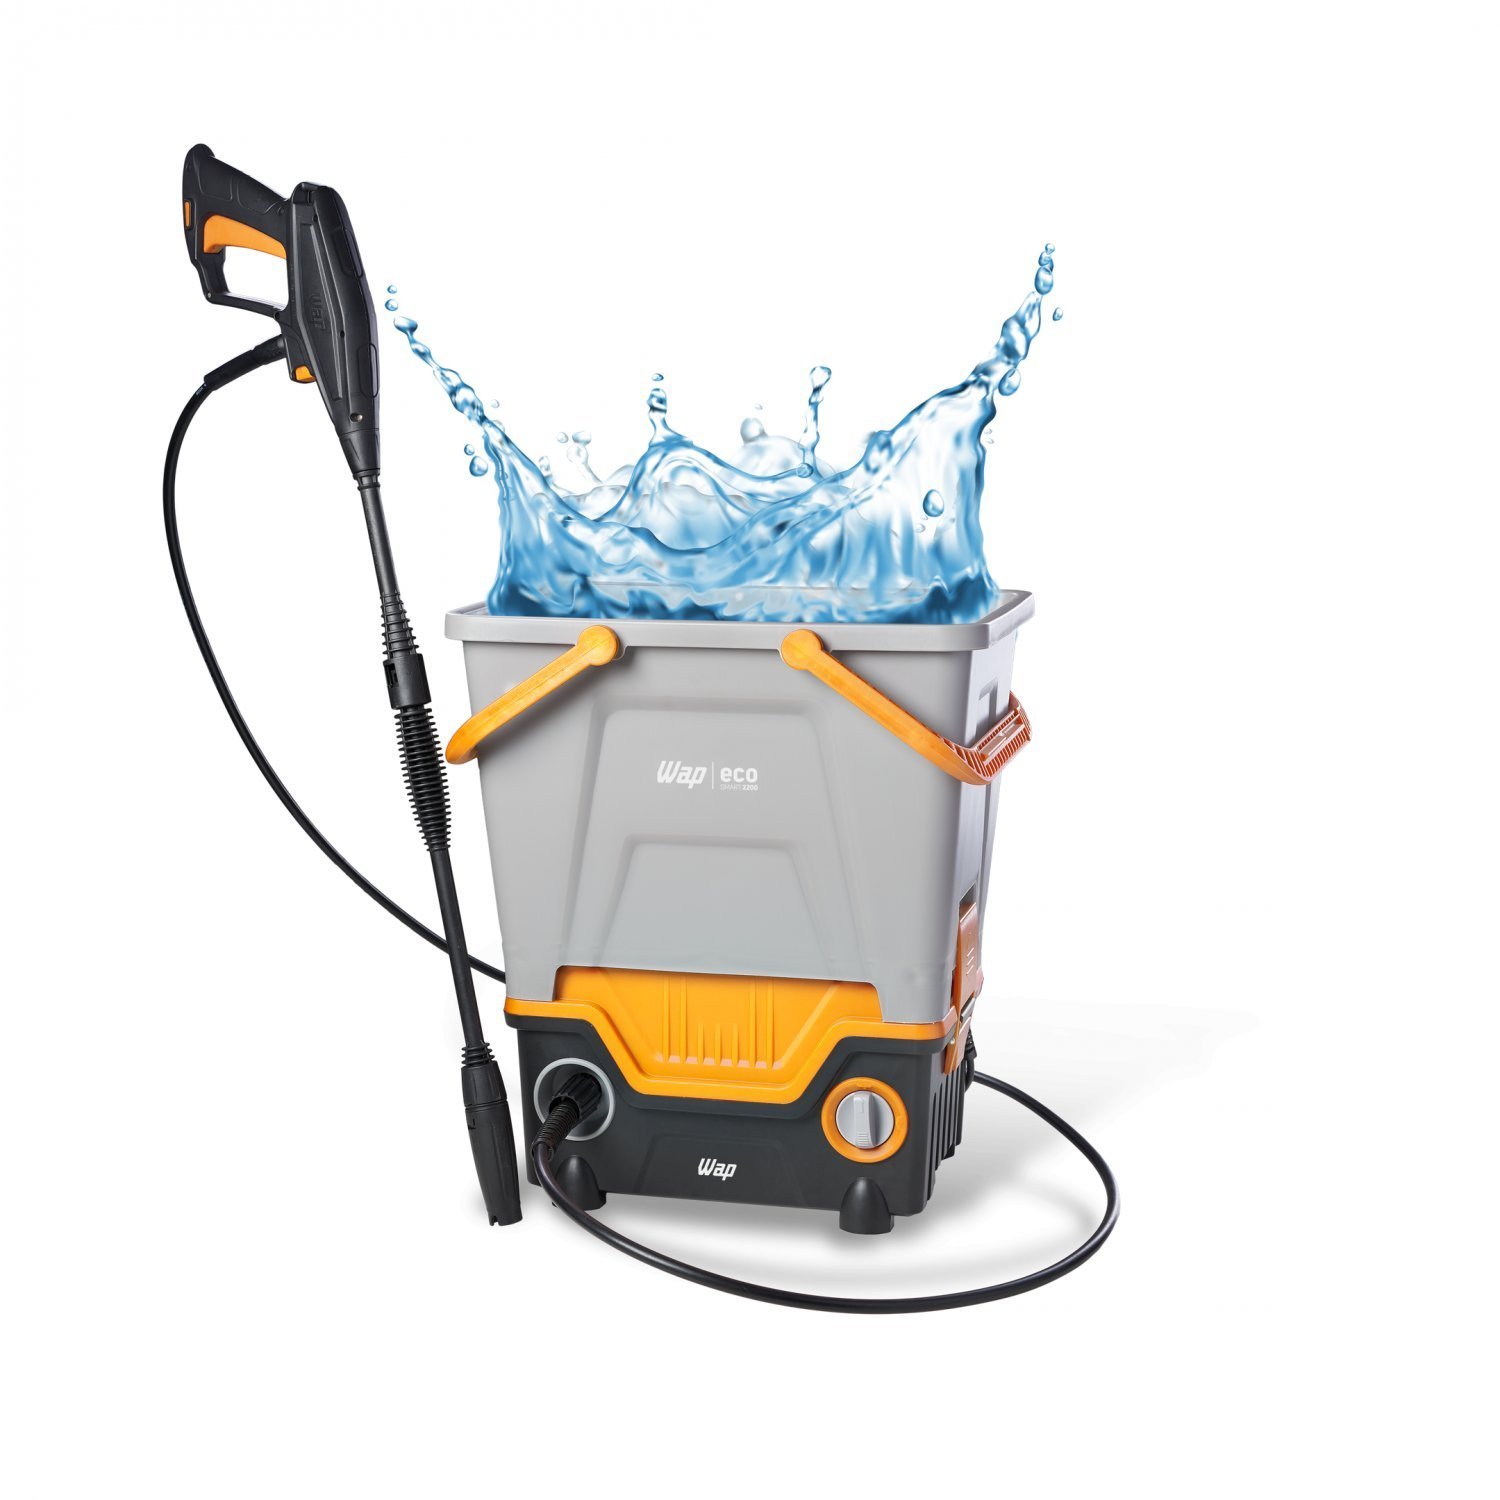 Lavadora de Alta Pressão WAP Eco Smart 2200 Reutiliza Água 1750W 1700PSI 220V - 8